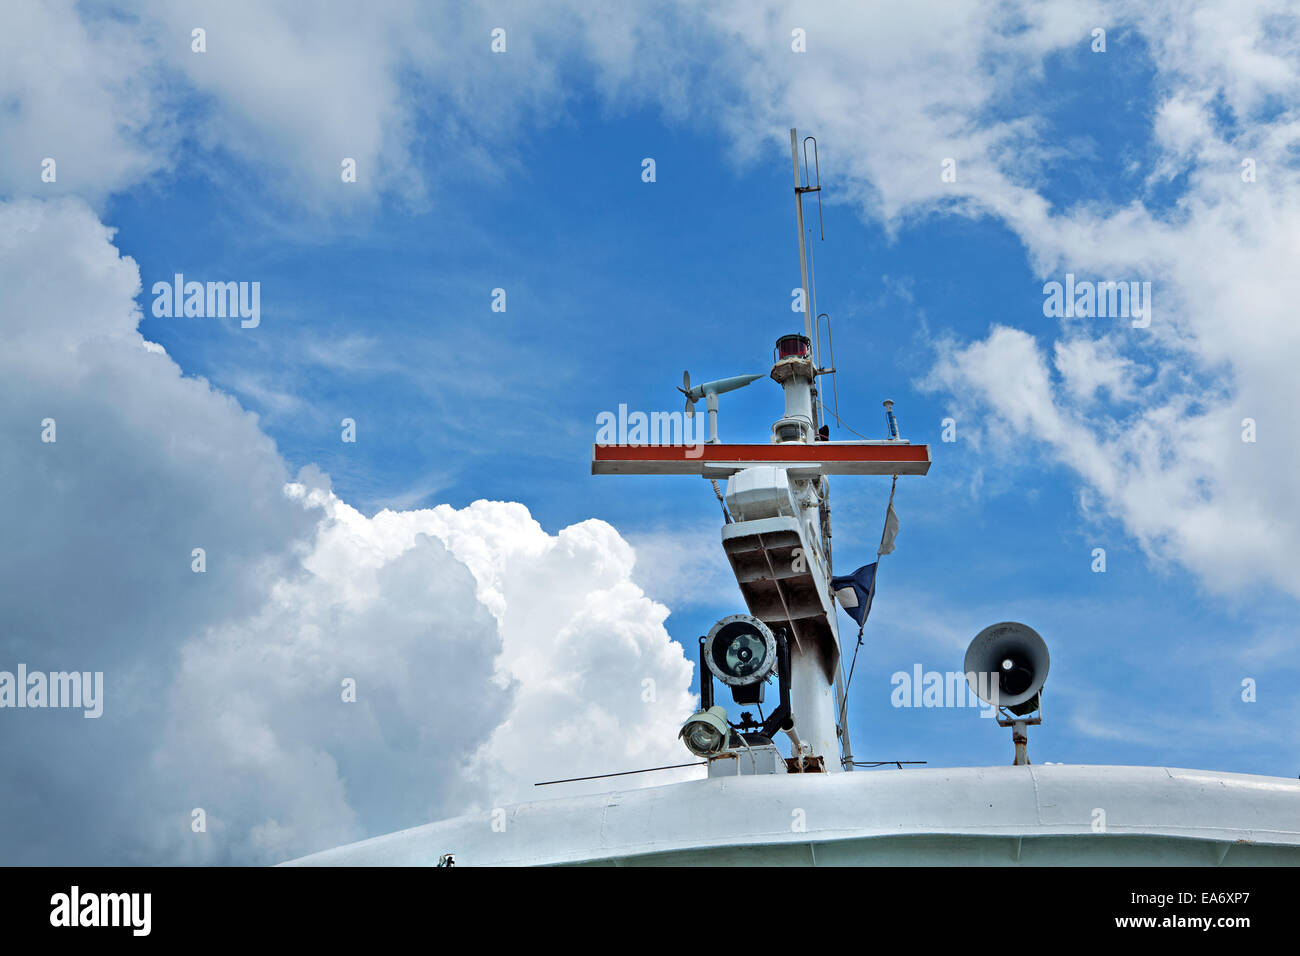 La navigation maritime et des systèmes de communication. Banque D'Images